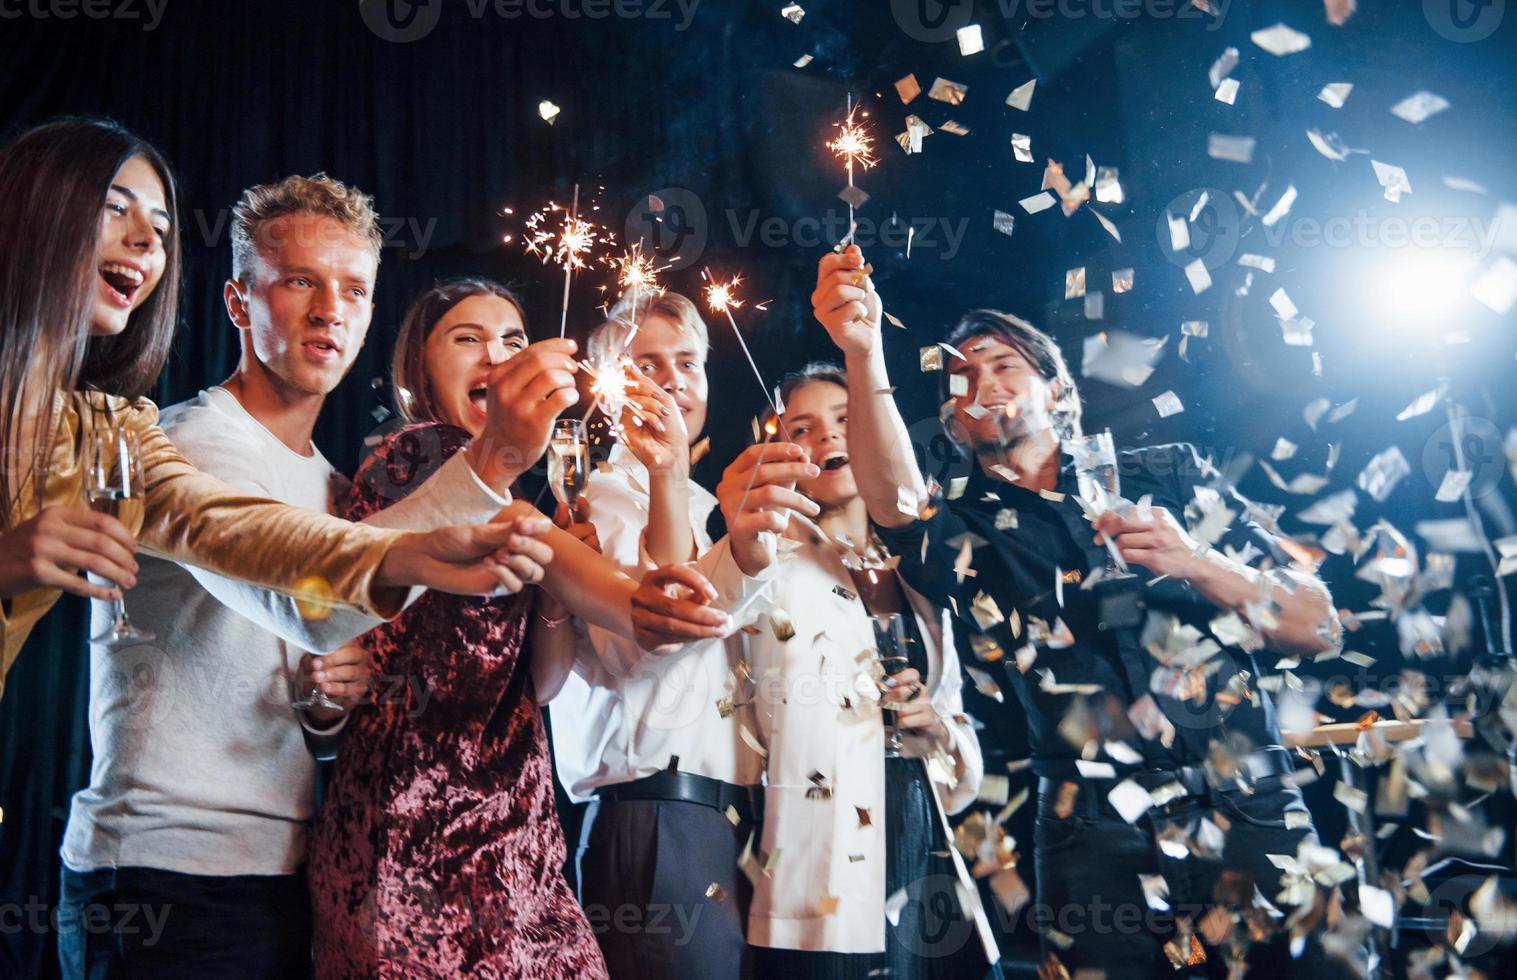 s'amuser avec des cierges magiques. les confettis sont dans l'air. groupe d'amis joyeux célébrant le nouvel an à l'intérieur avec des boissons dans les mains photo